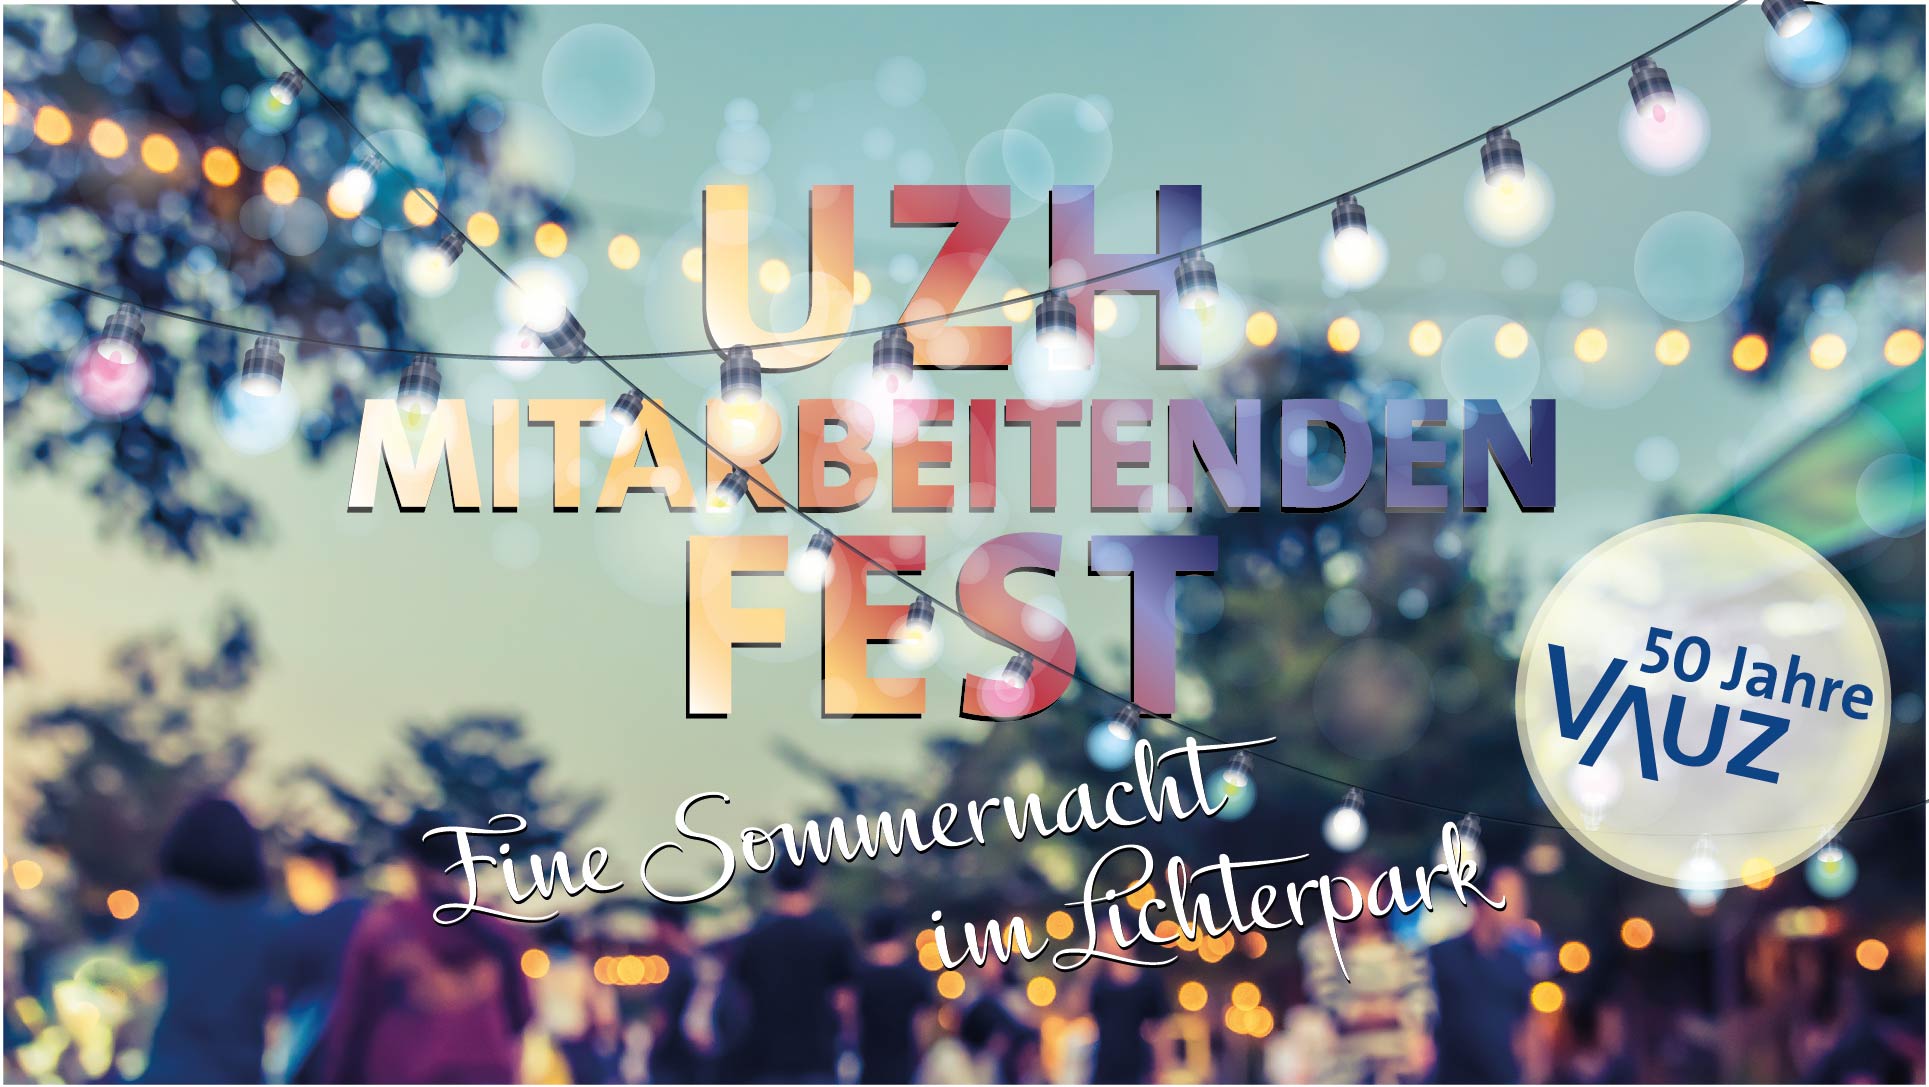 UZH-Mitarbeitendenfest – Sommernacht im Irchelpark